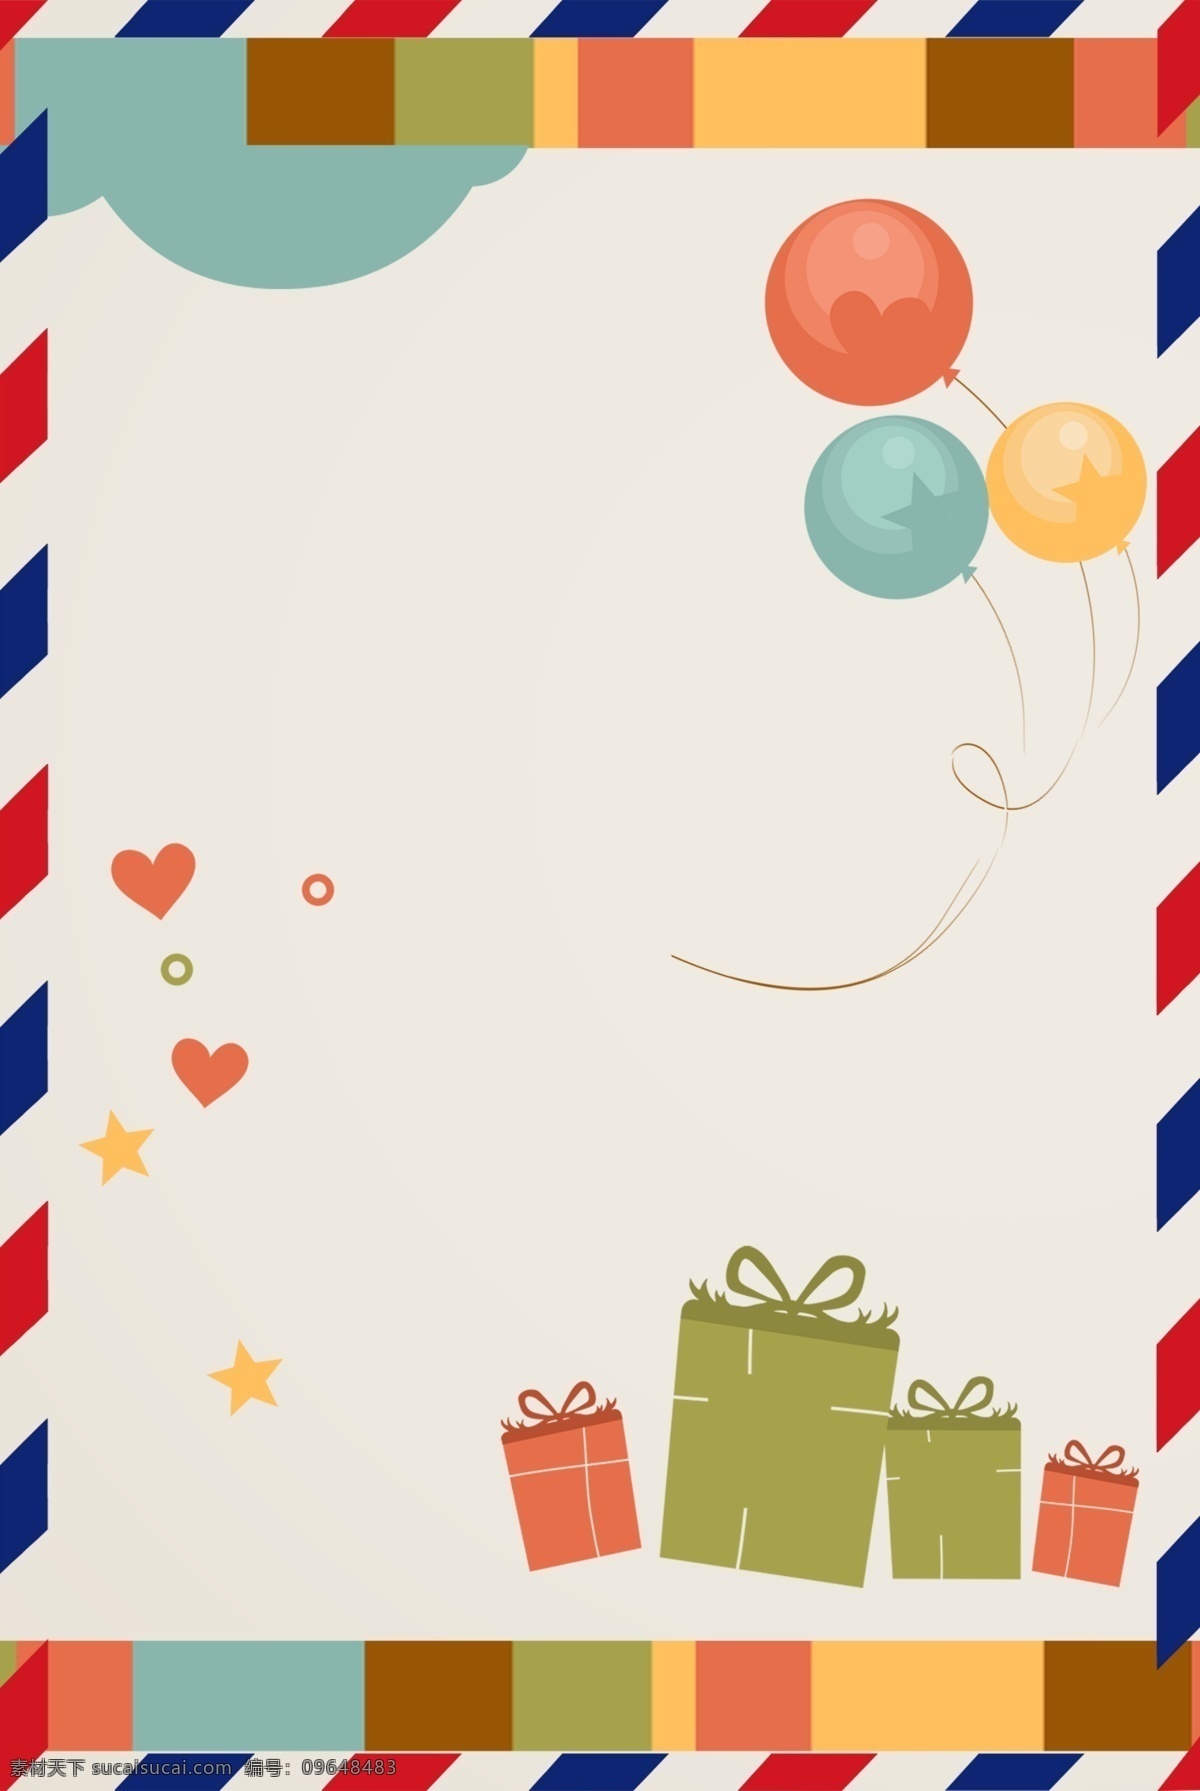 信封 信纸 气球 礼物 海报 背景 粉色 卡通 浪漫 甜美 可爱 清新 文艺 信件 贺卡